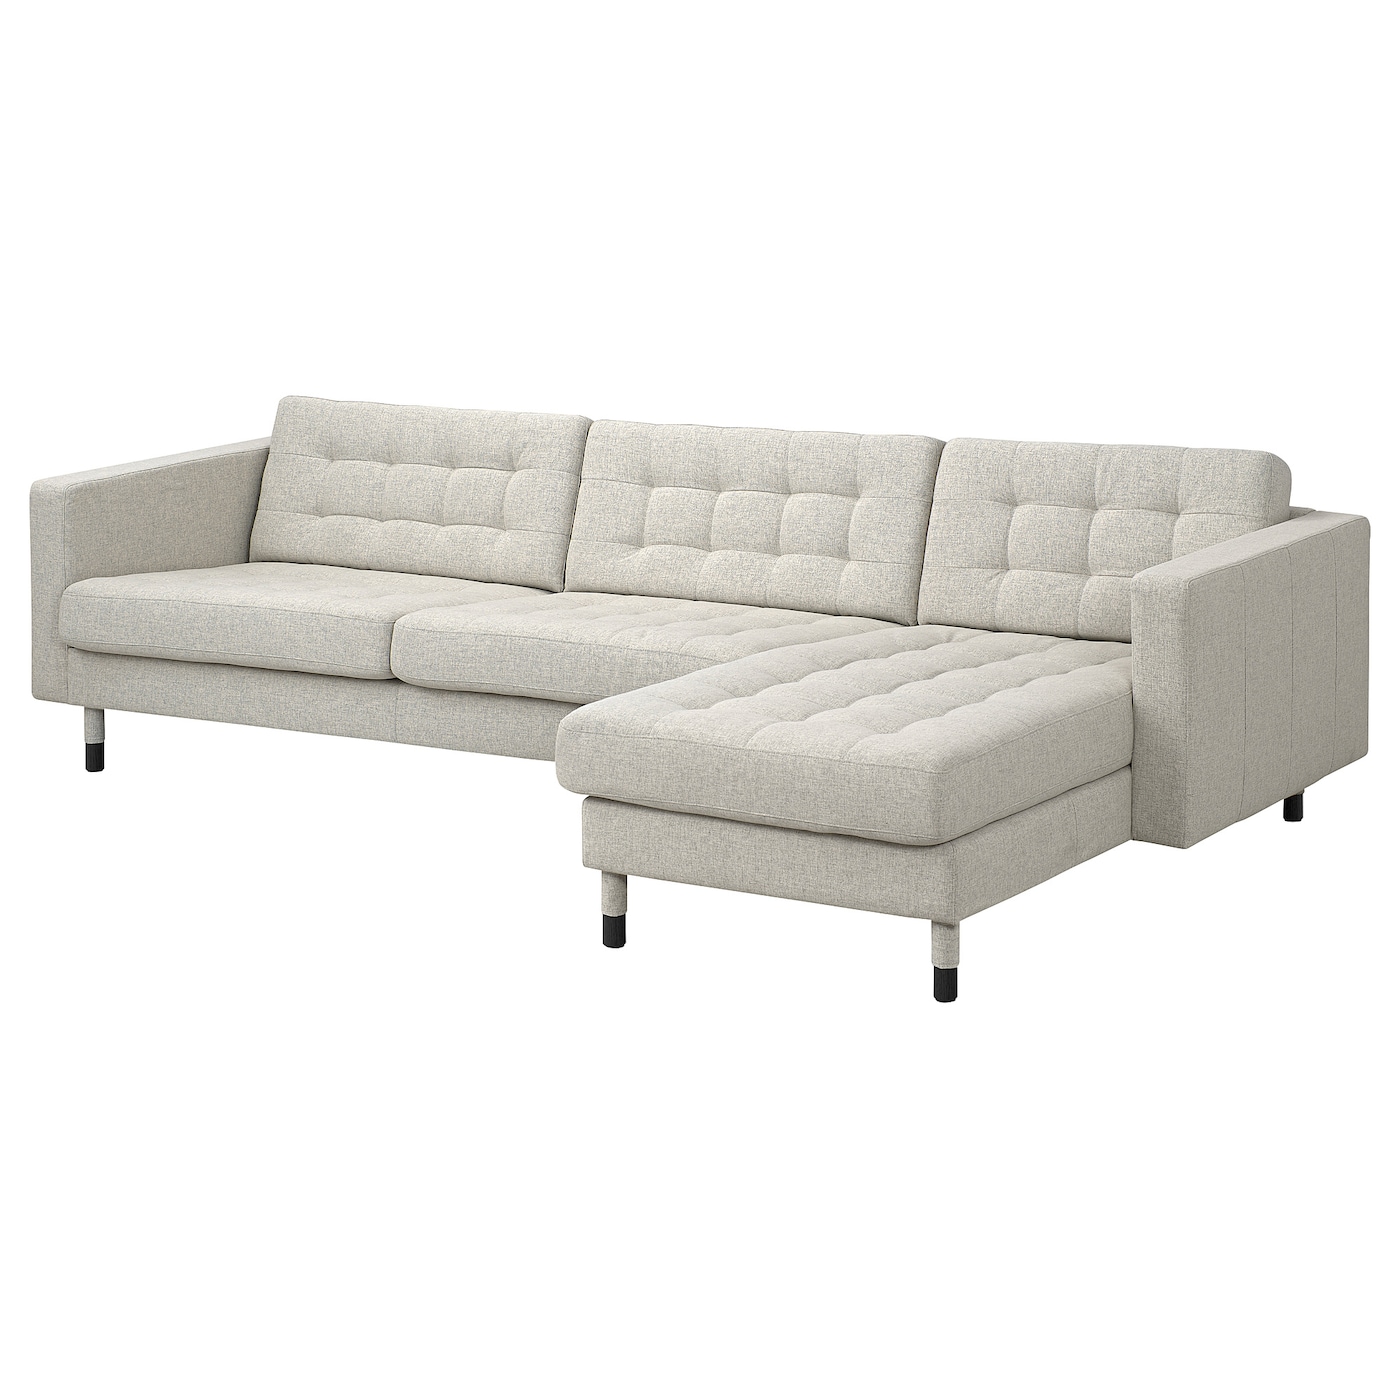 4-местный диван с шезлонгом - IKEA LANDSKRONA, 89x280см, бежевый, ЛАНДСКРУНА ИКЕА